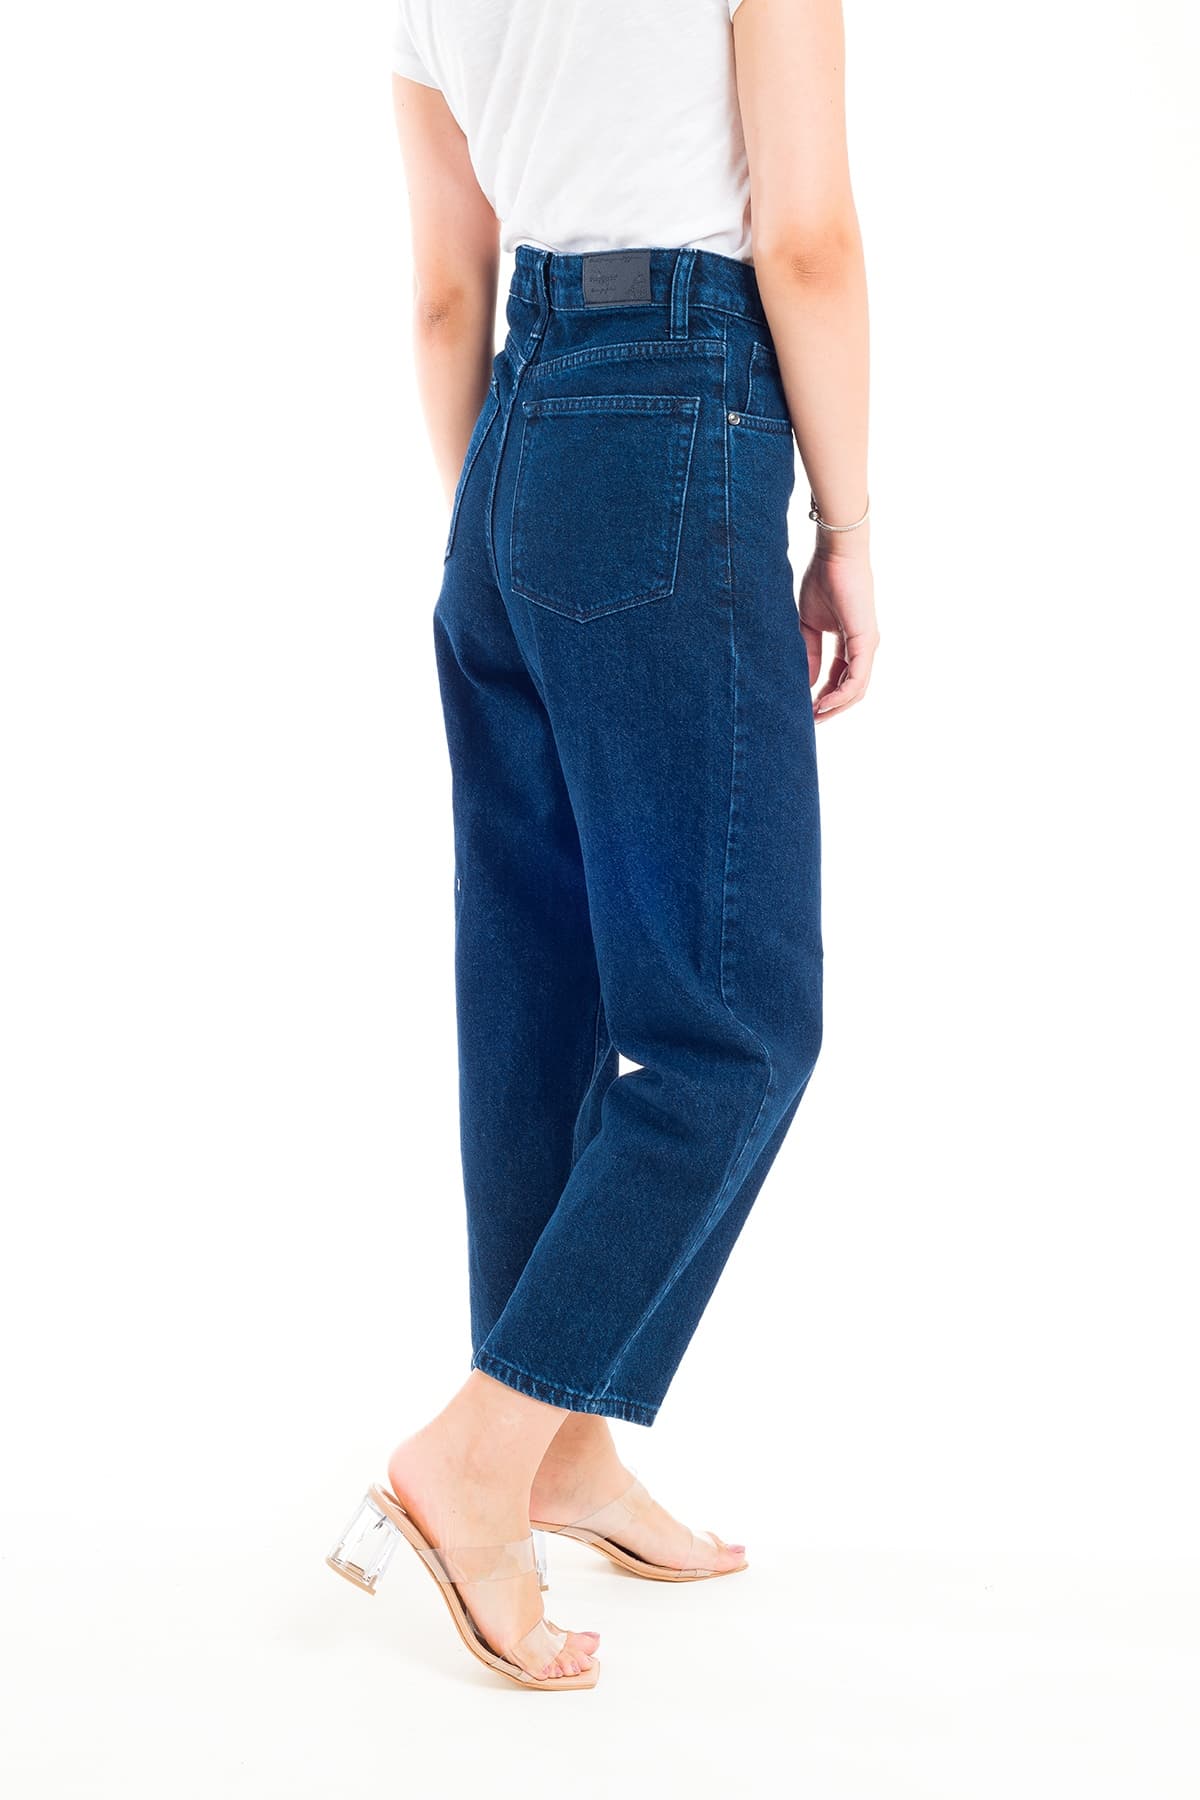 Desperado 323 Mom Jeans Model Kadın Kot Pantolon